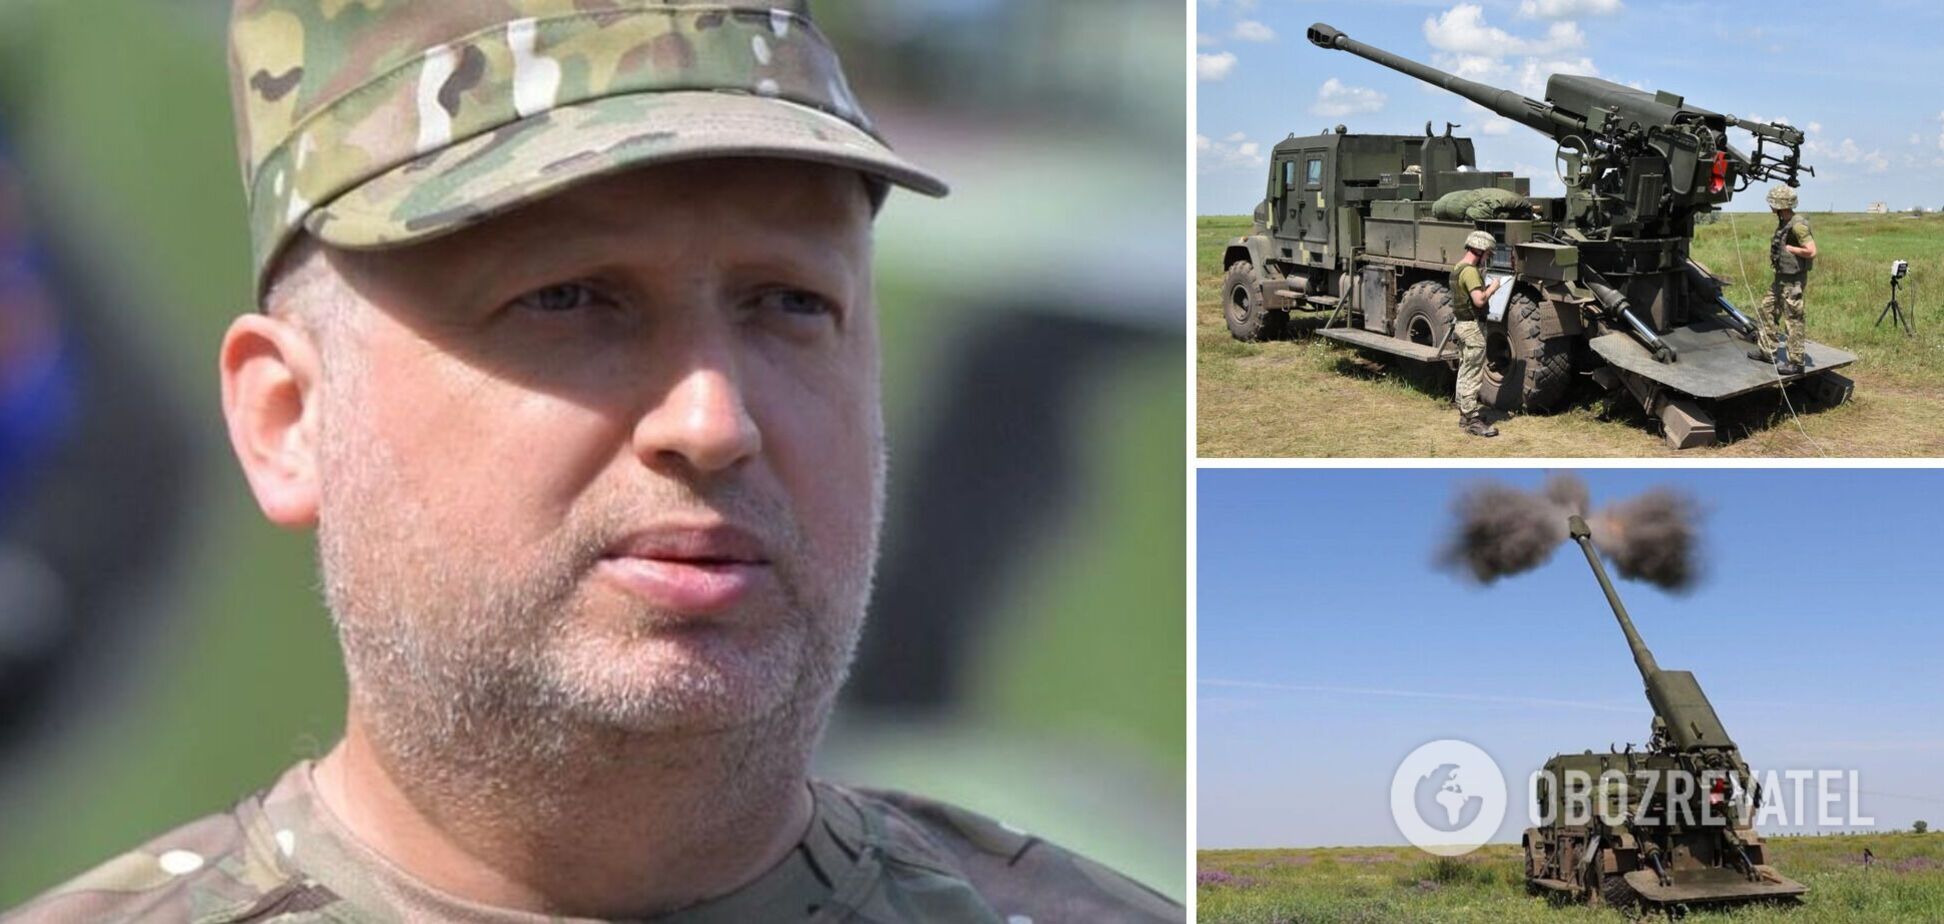 Эффективное украинское оружие является залогом нашей независимости, – Турчинов об успехе САУ 'Богдана'